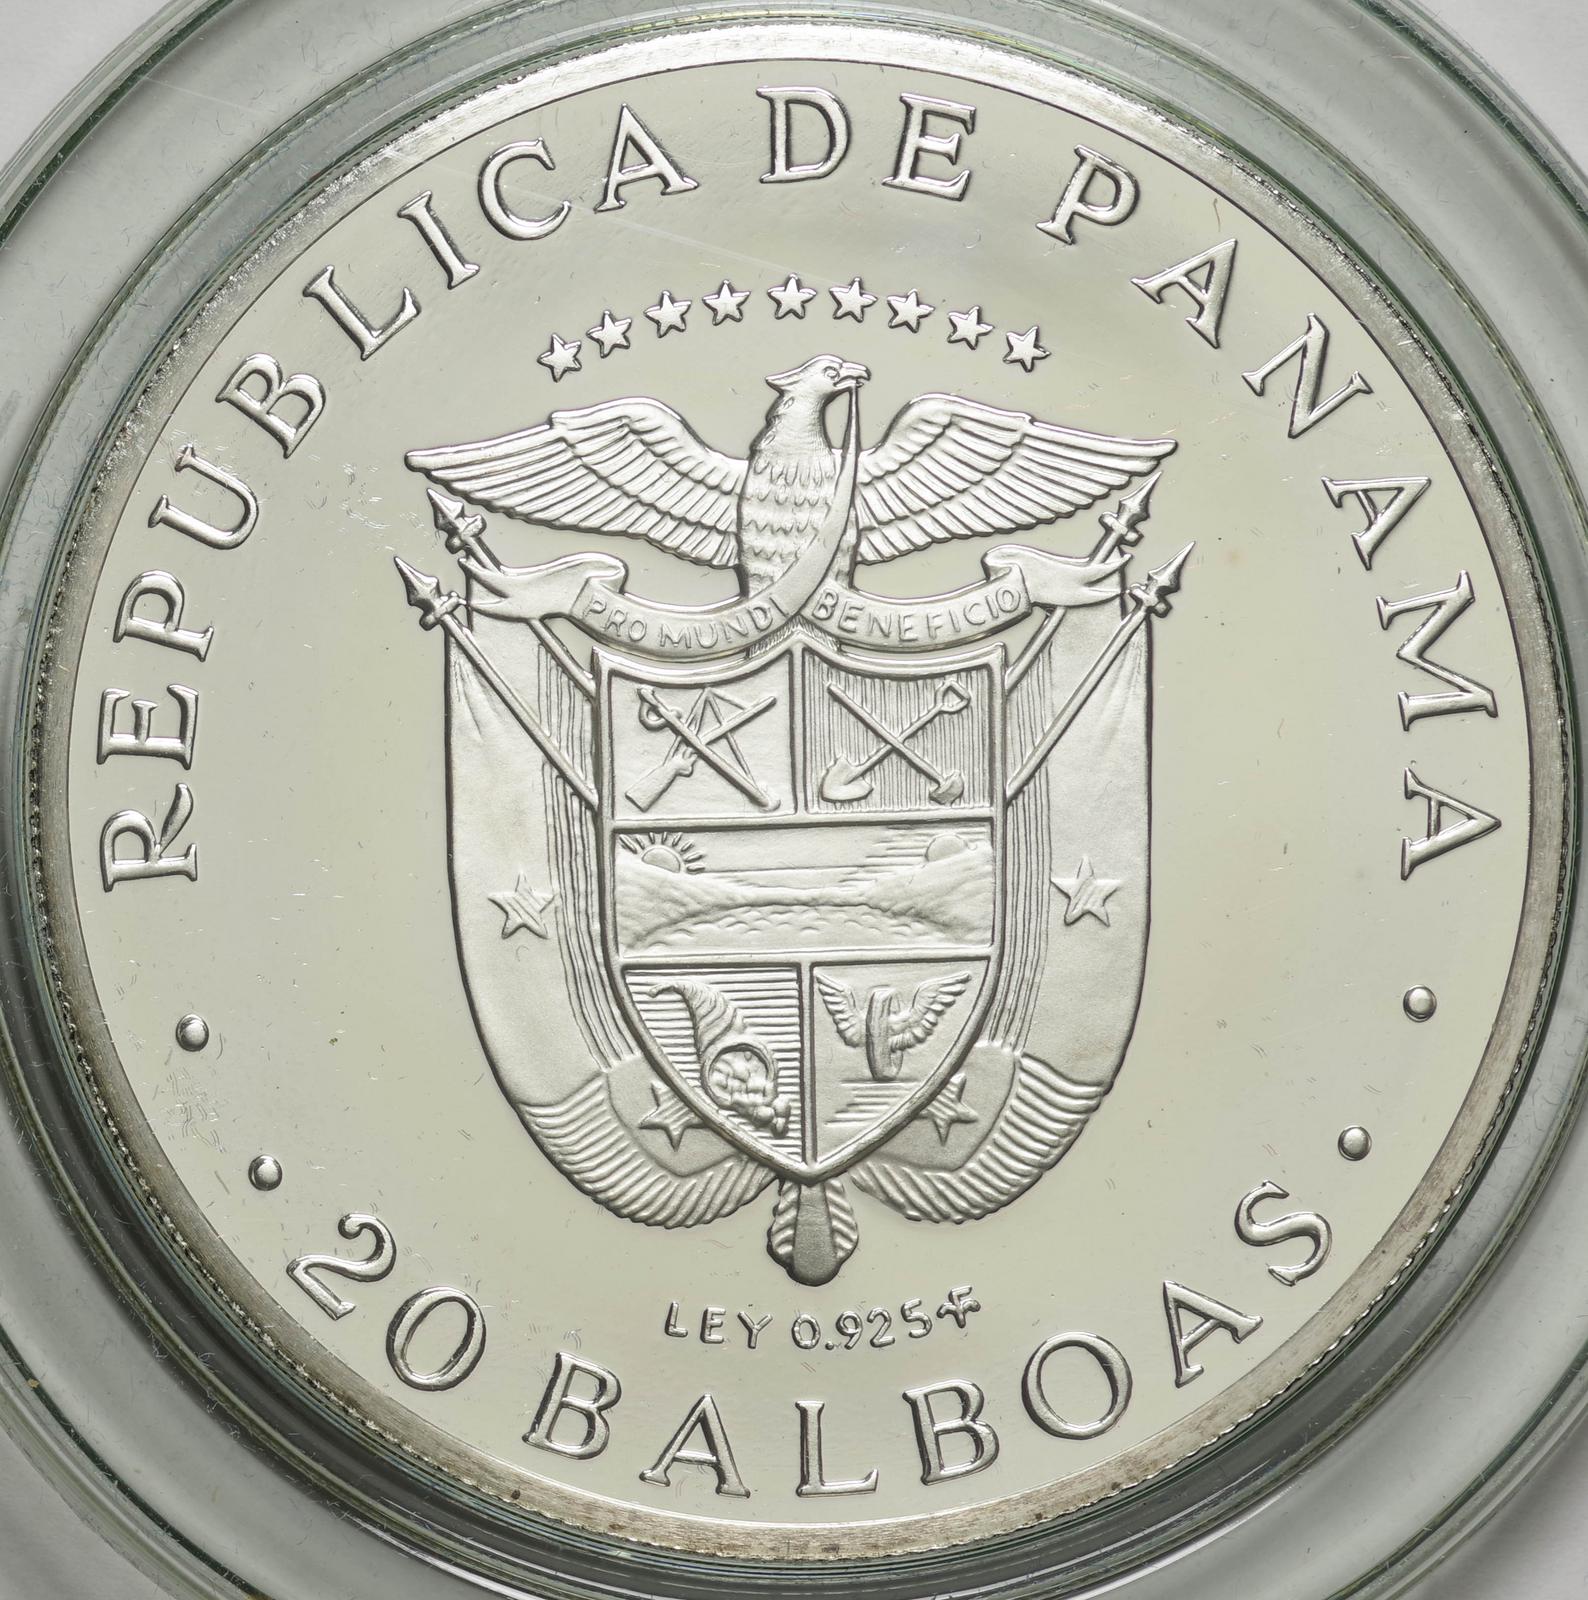 パナマ-Panama. シモン・ボリバール像 20バルボア銀貨 1974年 KM31